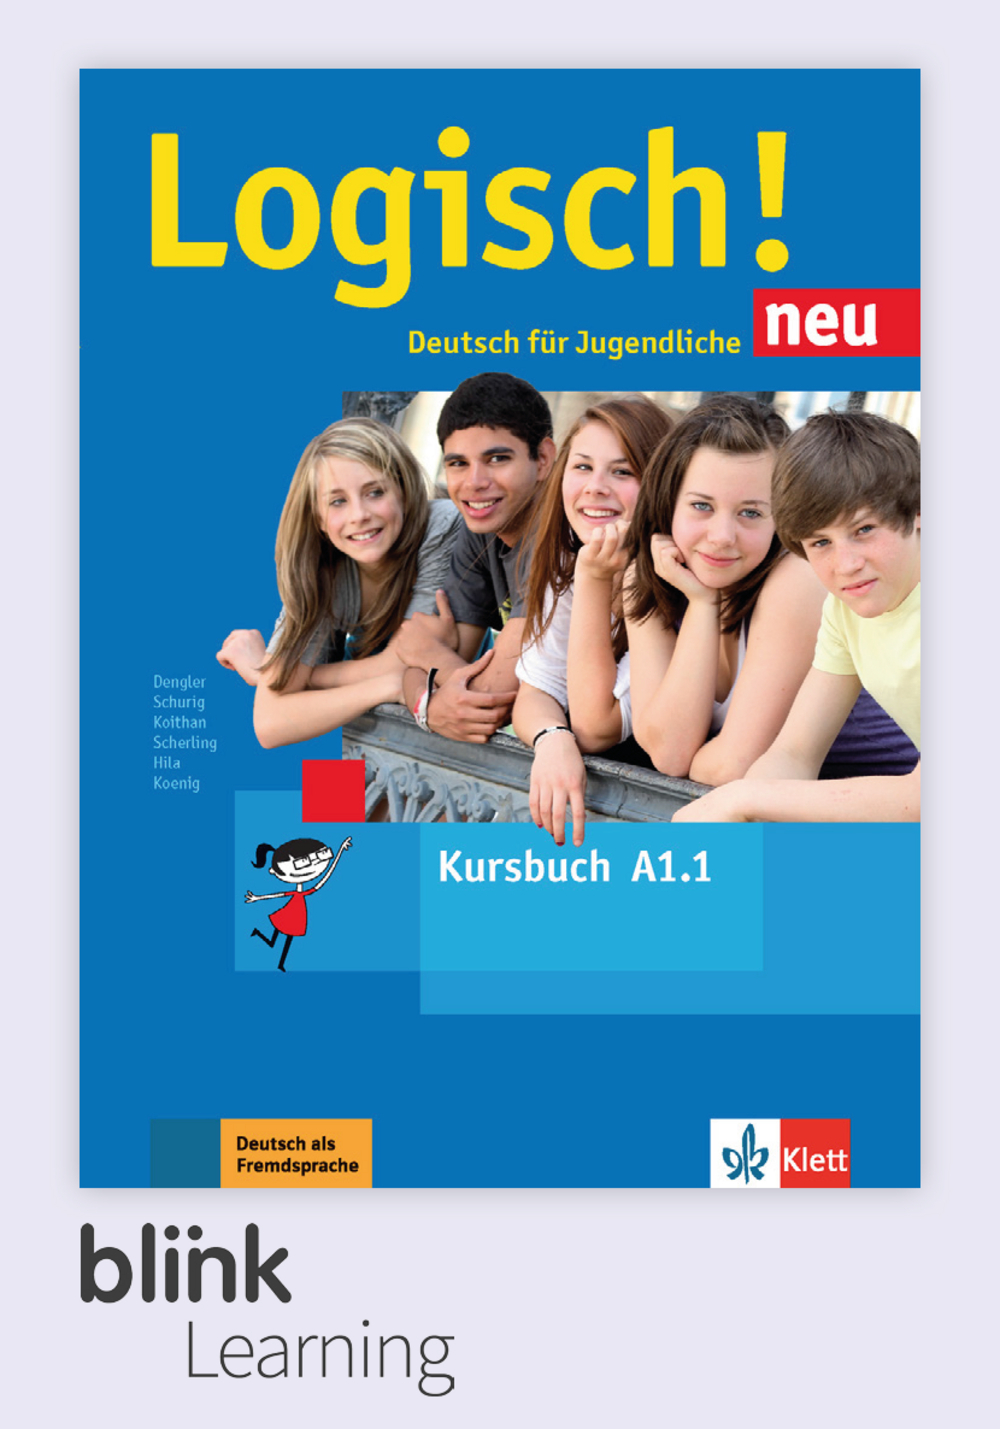 Logisch! neu A1.1 Digital Kursbuch fur Unterrichtende / Цифровой учебник для учителя